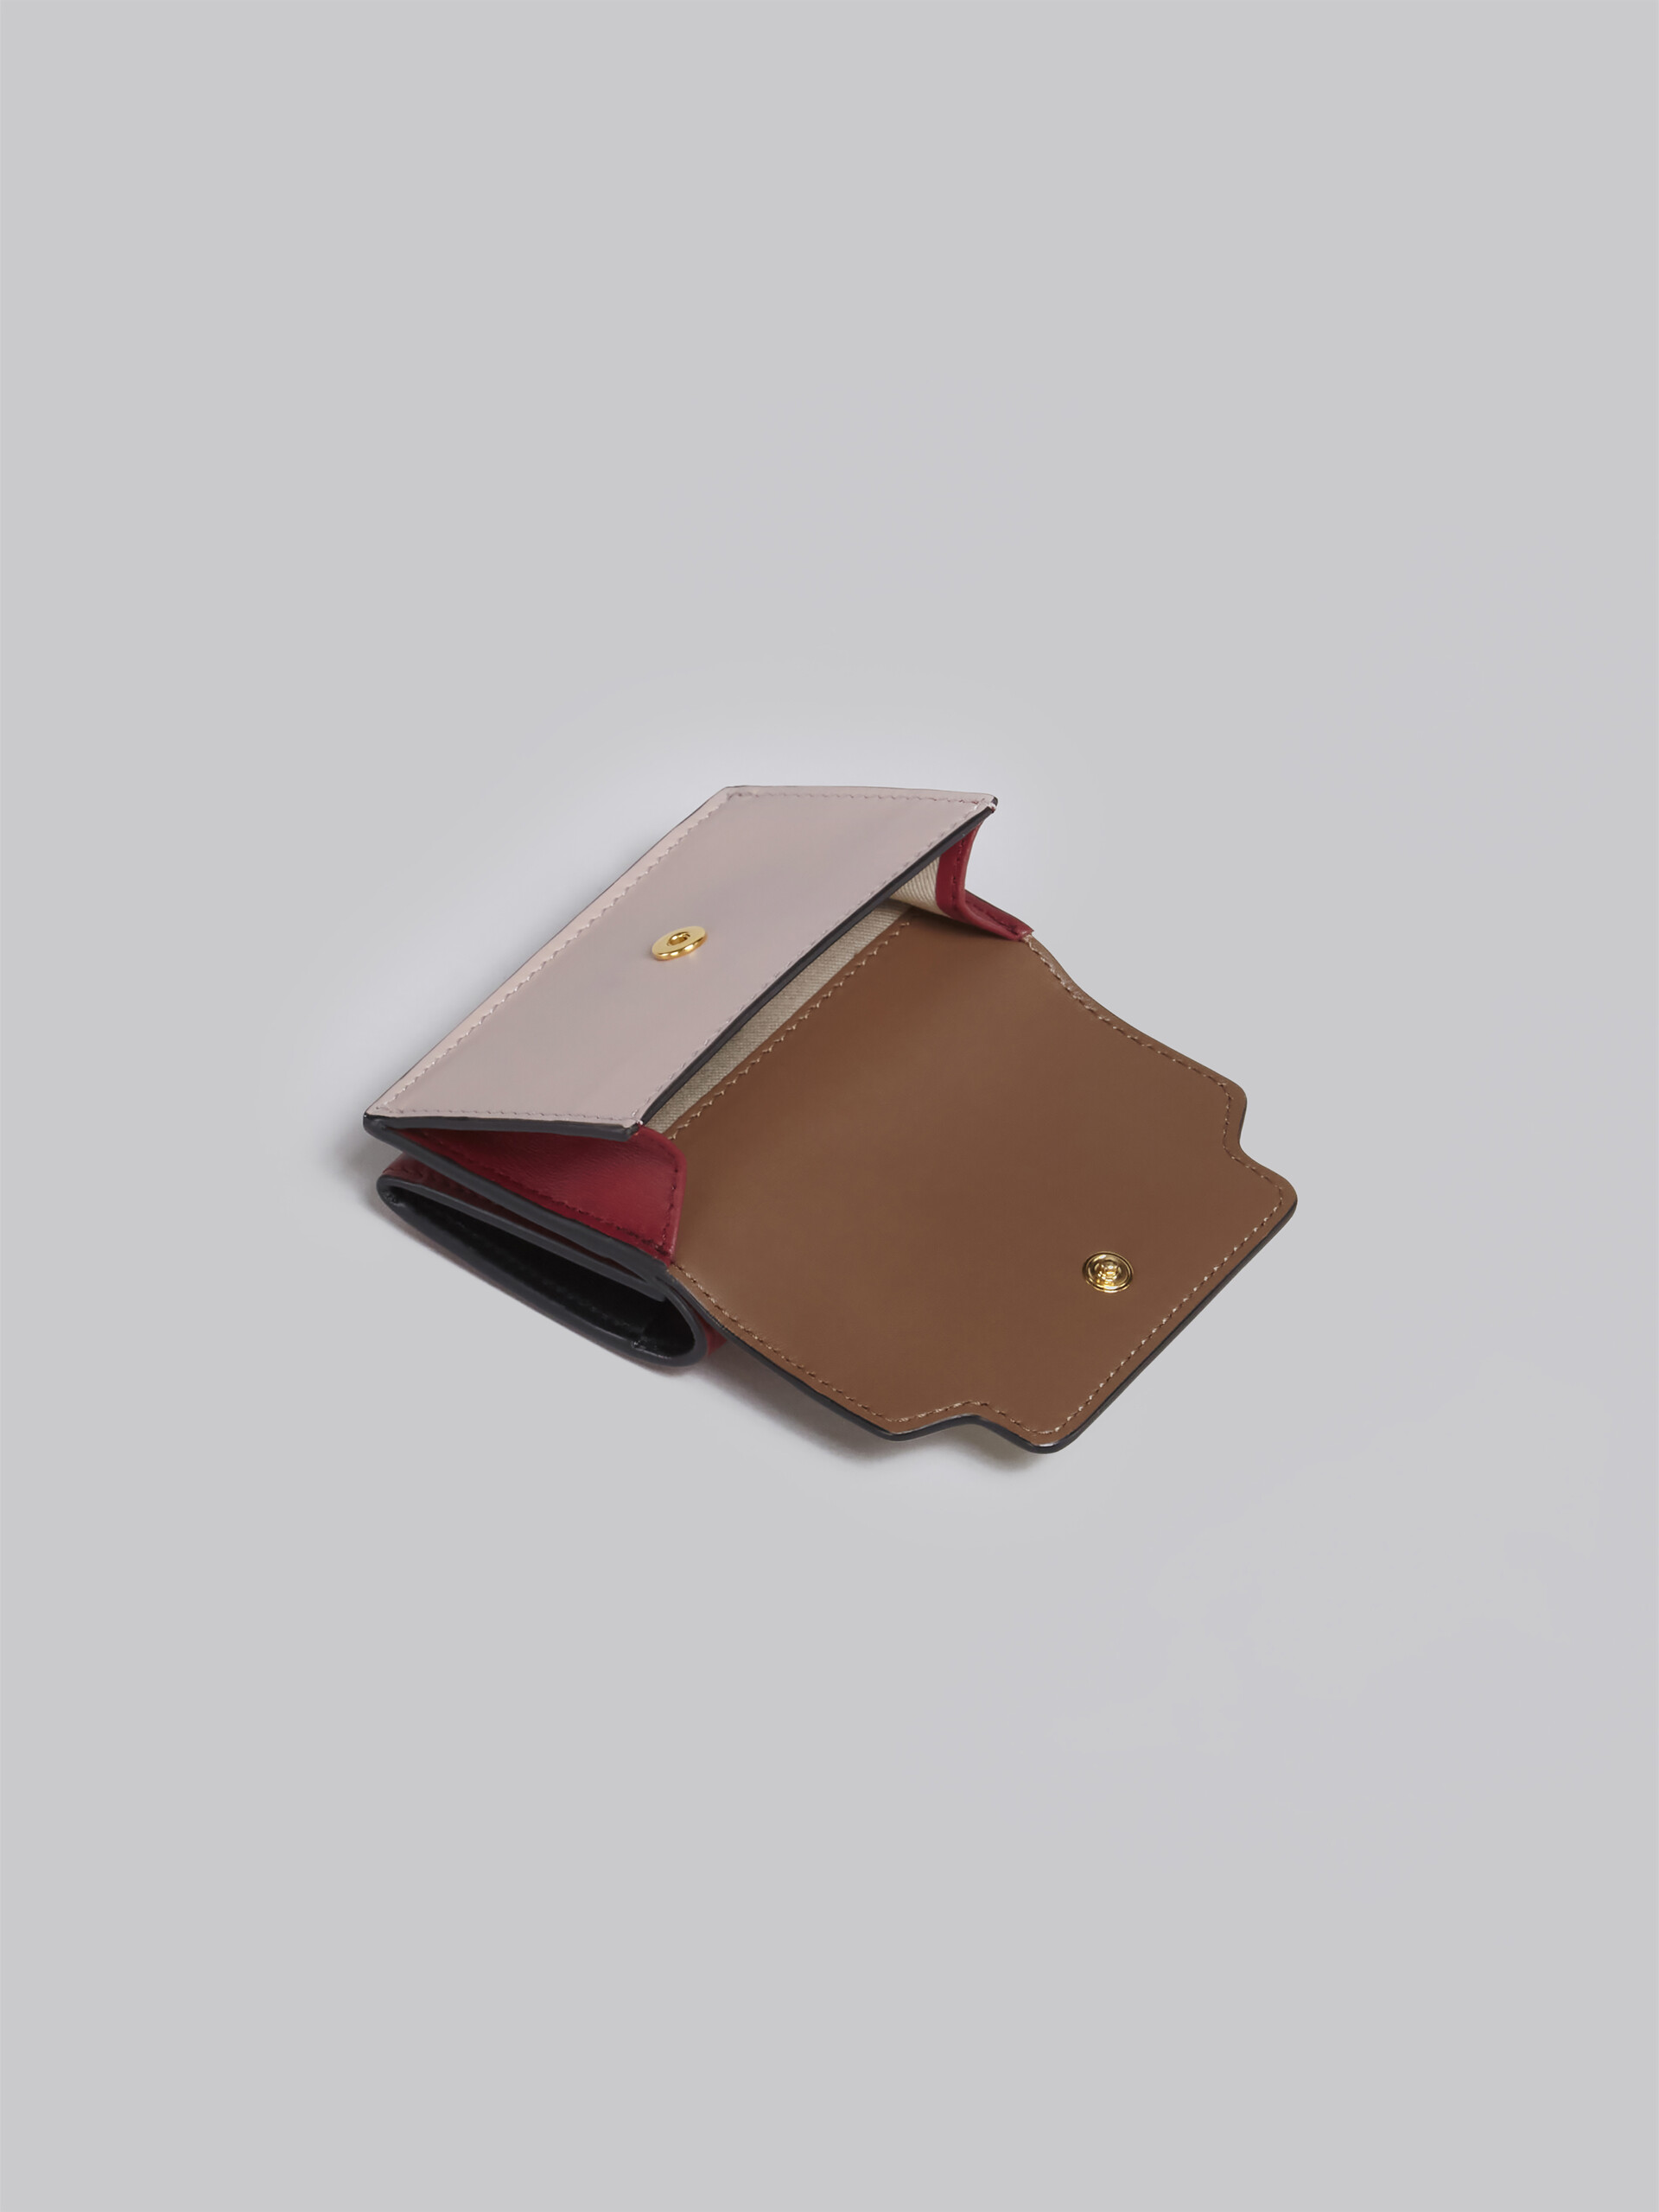 Dreifach faltbare Brieftasche aus braun-pinkem und burgunderrotem Leder - Brieftaschen - Image 5